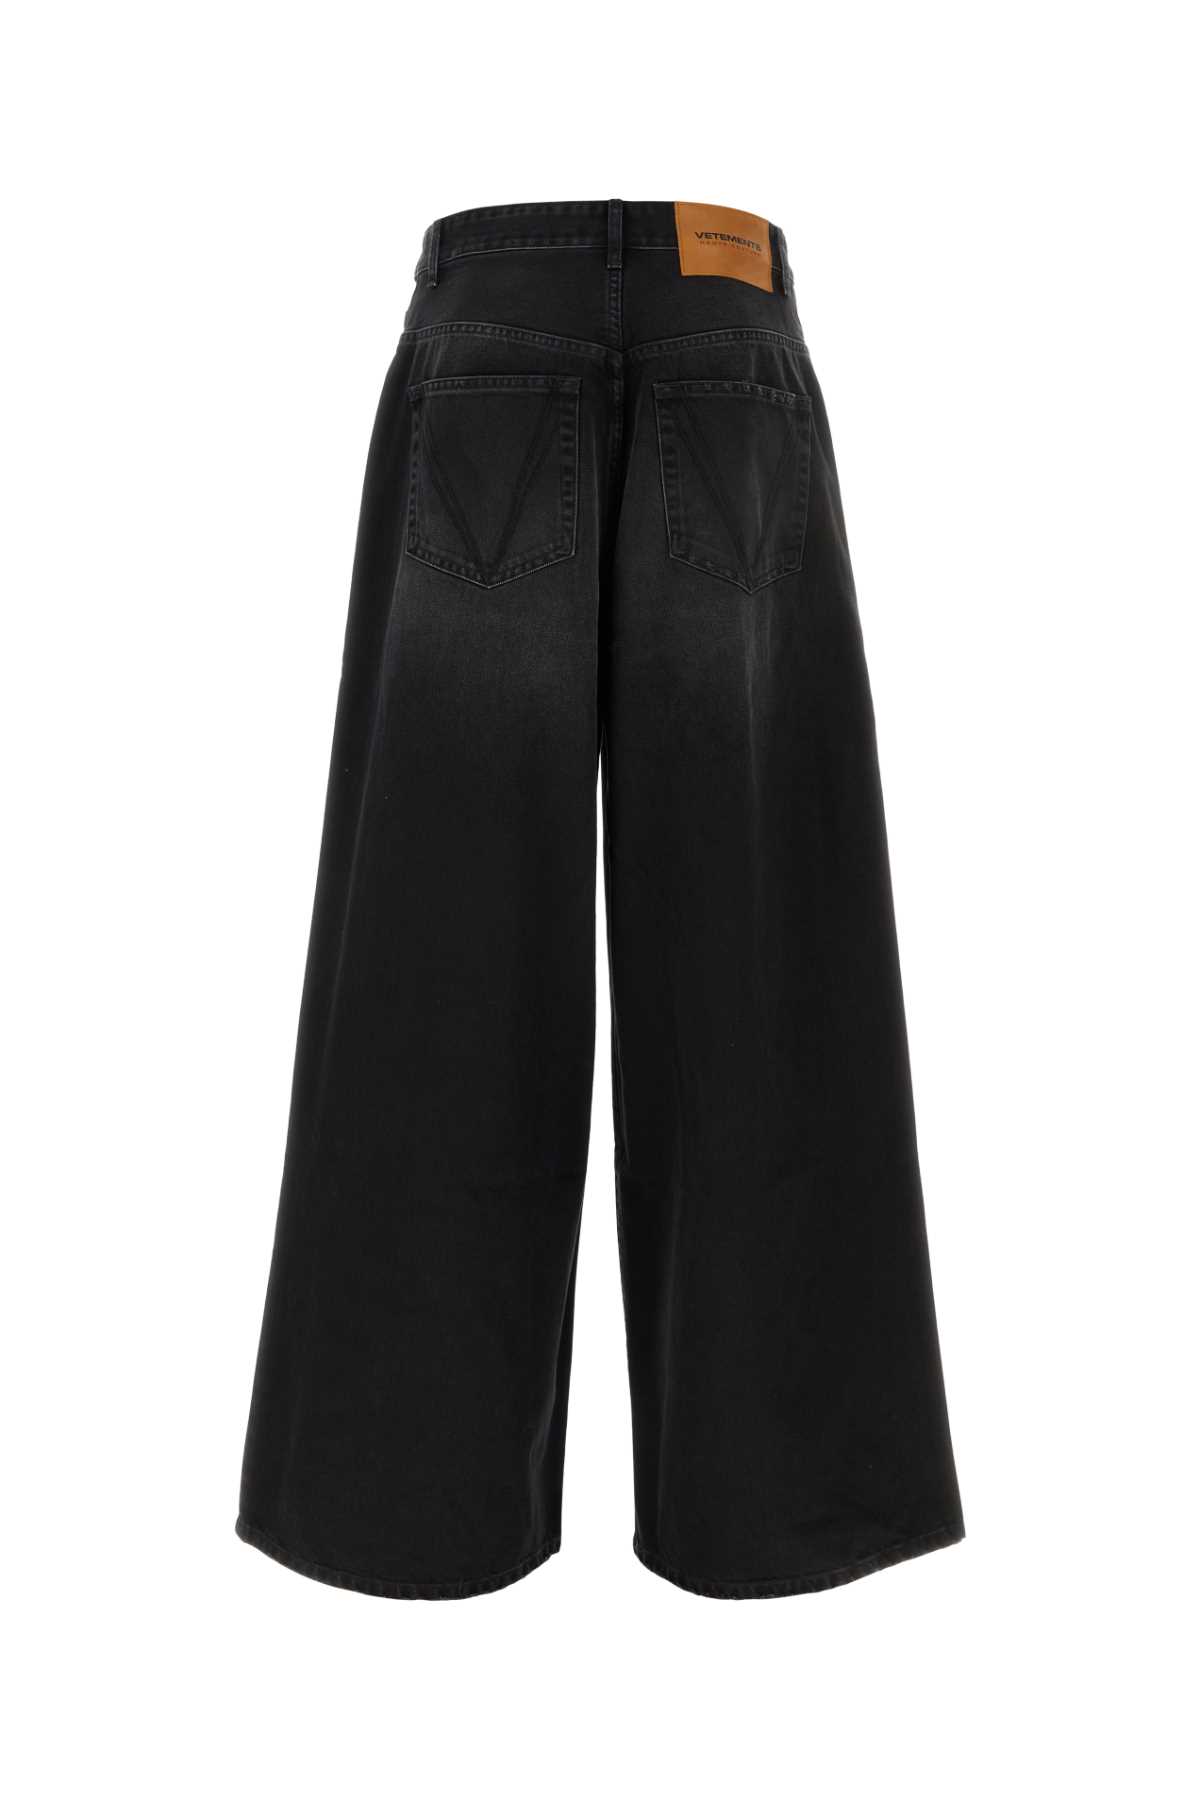 Shop Vetements Black Denim Wide-leg Jeans